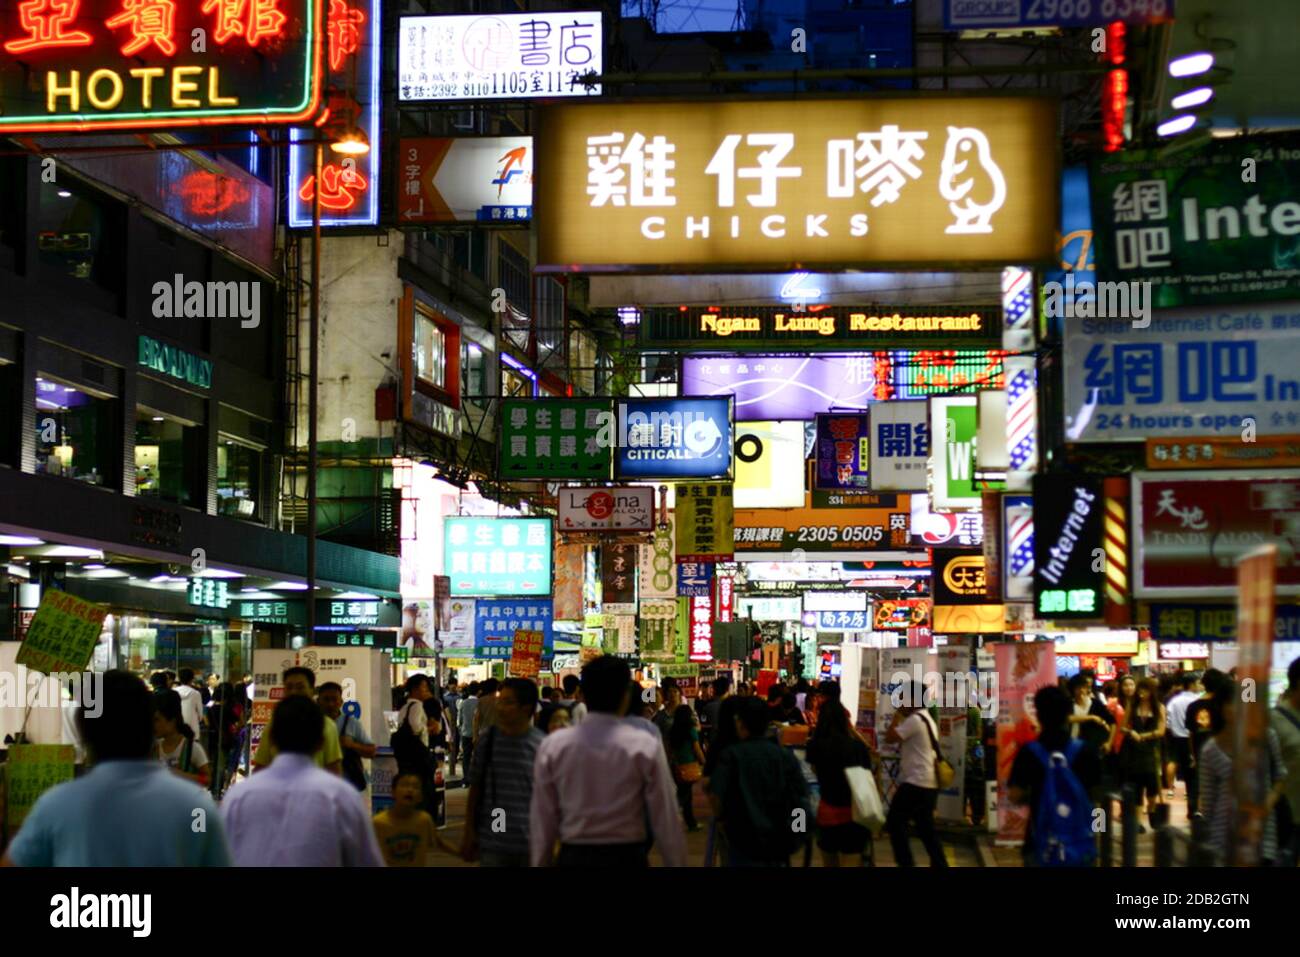 folla che cammina senza maschera nel centro di hong kong, vista notturna con cartelli illuminati Foto Stock